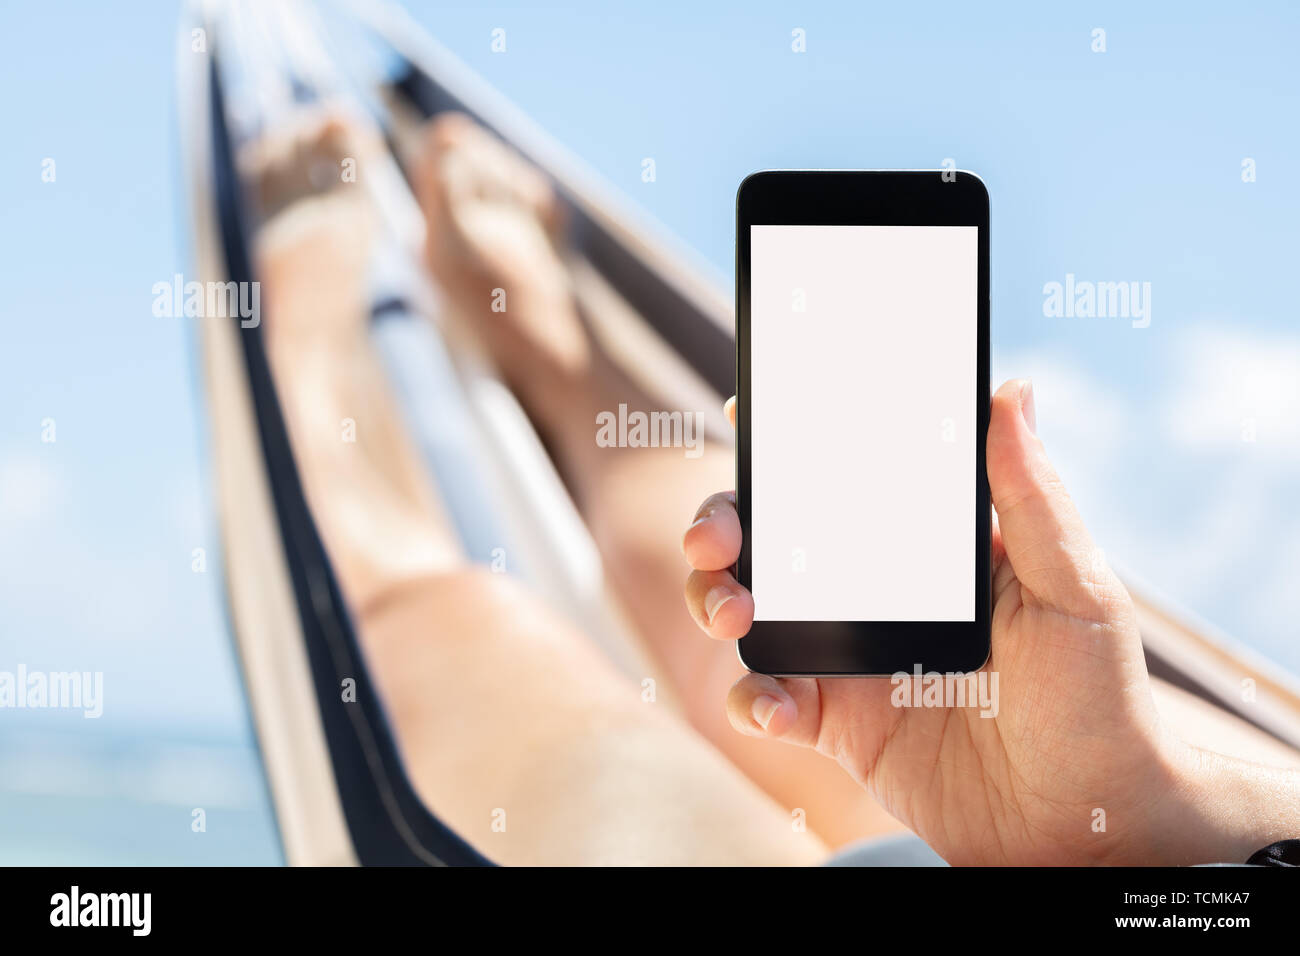 Junge Frau liegend auf Hängematte mit Handy mit weißen Bildschirm gegen den blauen Himmel Stockfoto